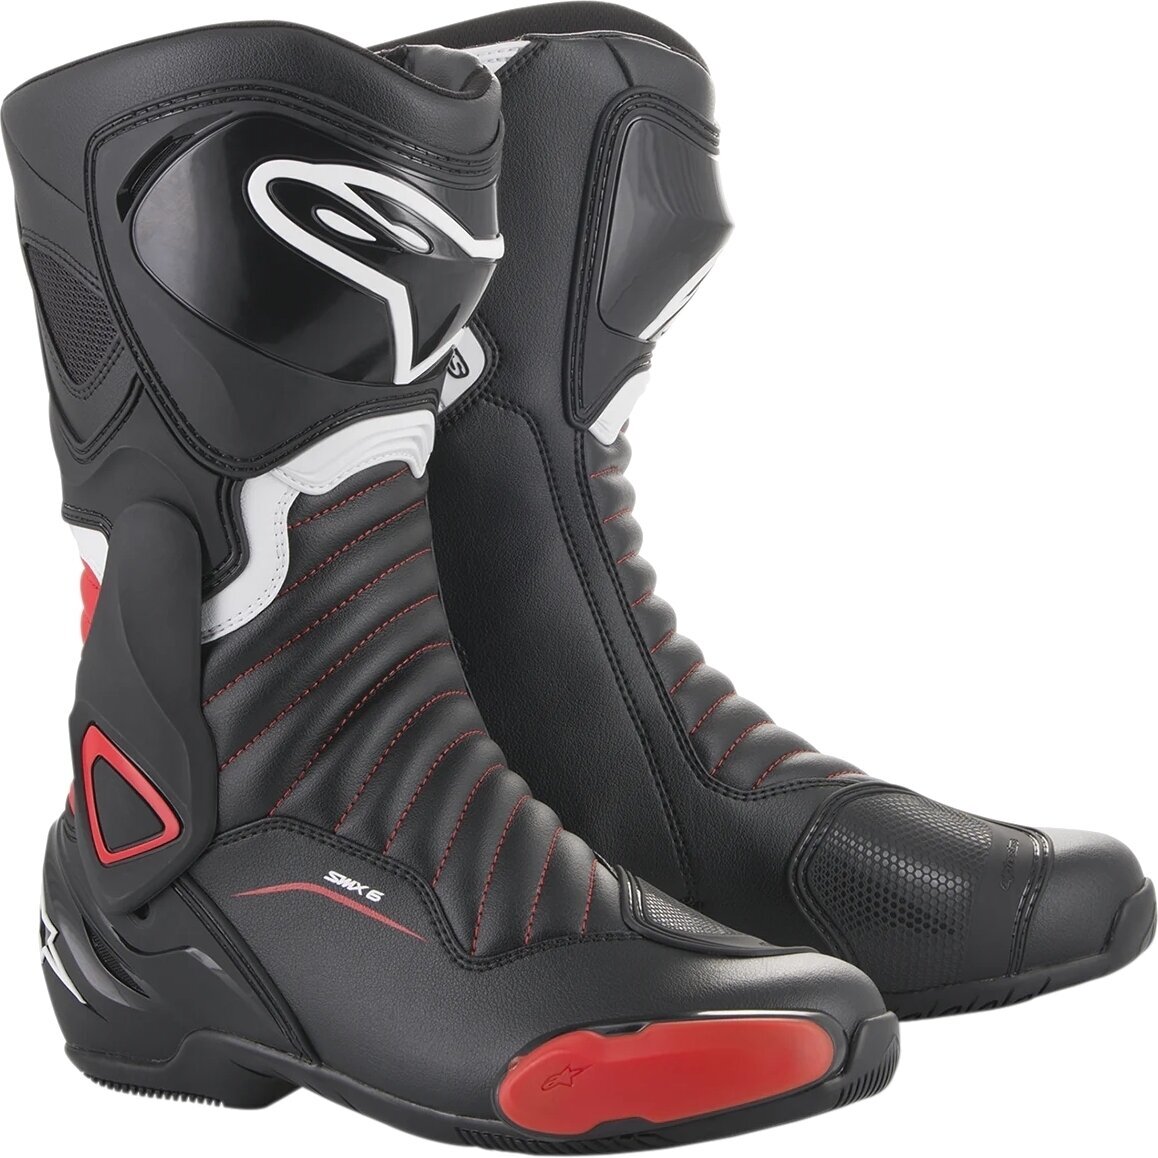 Topánky Alpinestars SMX-6 V2 Boots Black/Gray/Red Fluo 37 Topánky